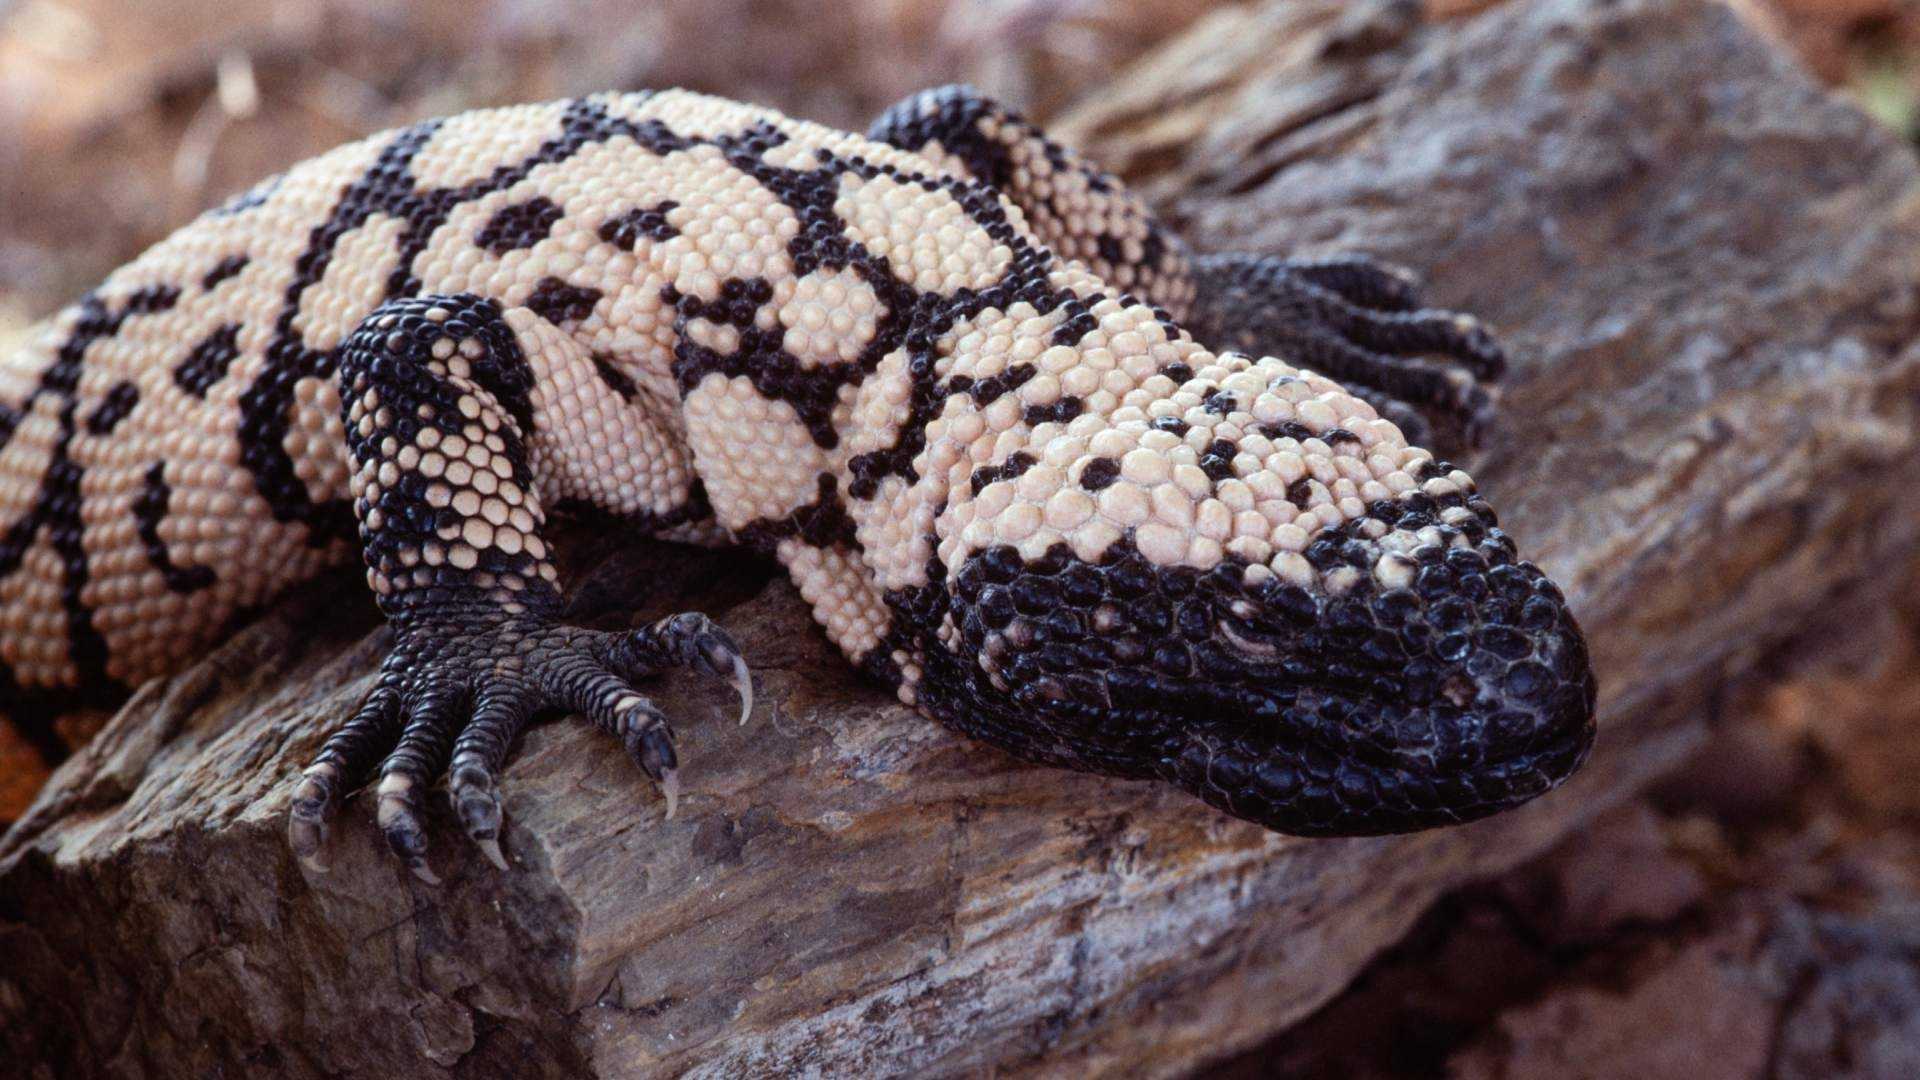 Los monstruos de Gila son reptiles venenosos que habitan de forma natural en partes del suroeste de Estados Unidos y zonas vecinas de México. Foto: AP